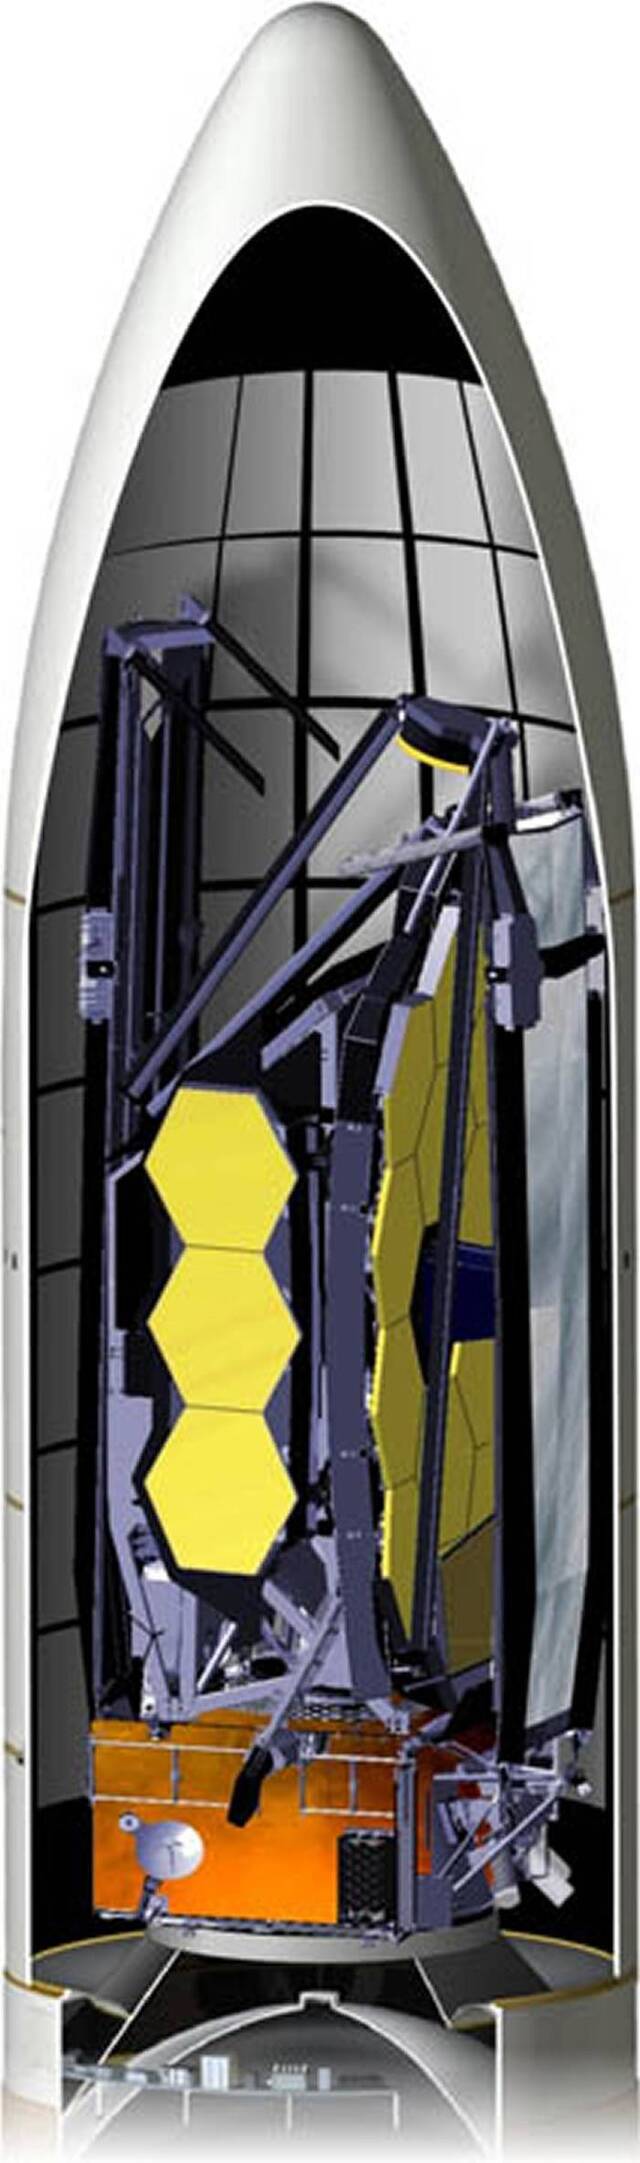 詹姆斯·韦伯太空望远镜将利用高科技折纸技术“钻”进Ariane 5火箭里面